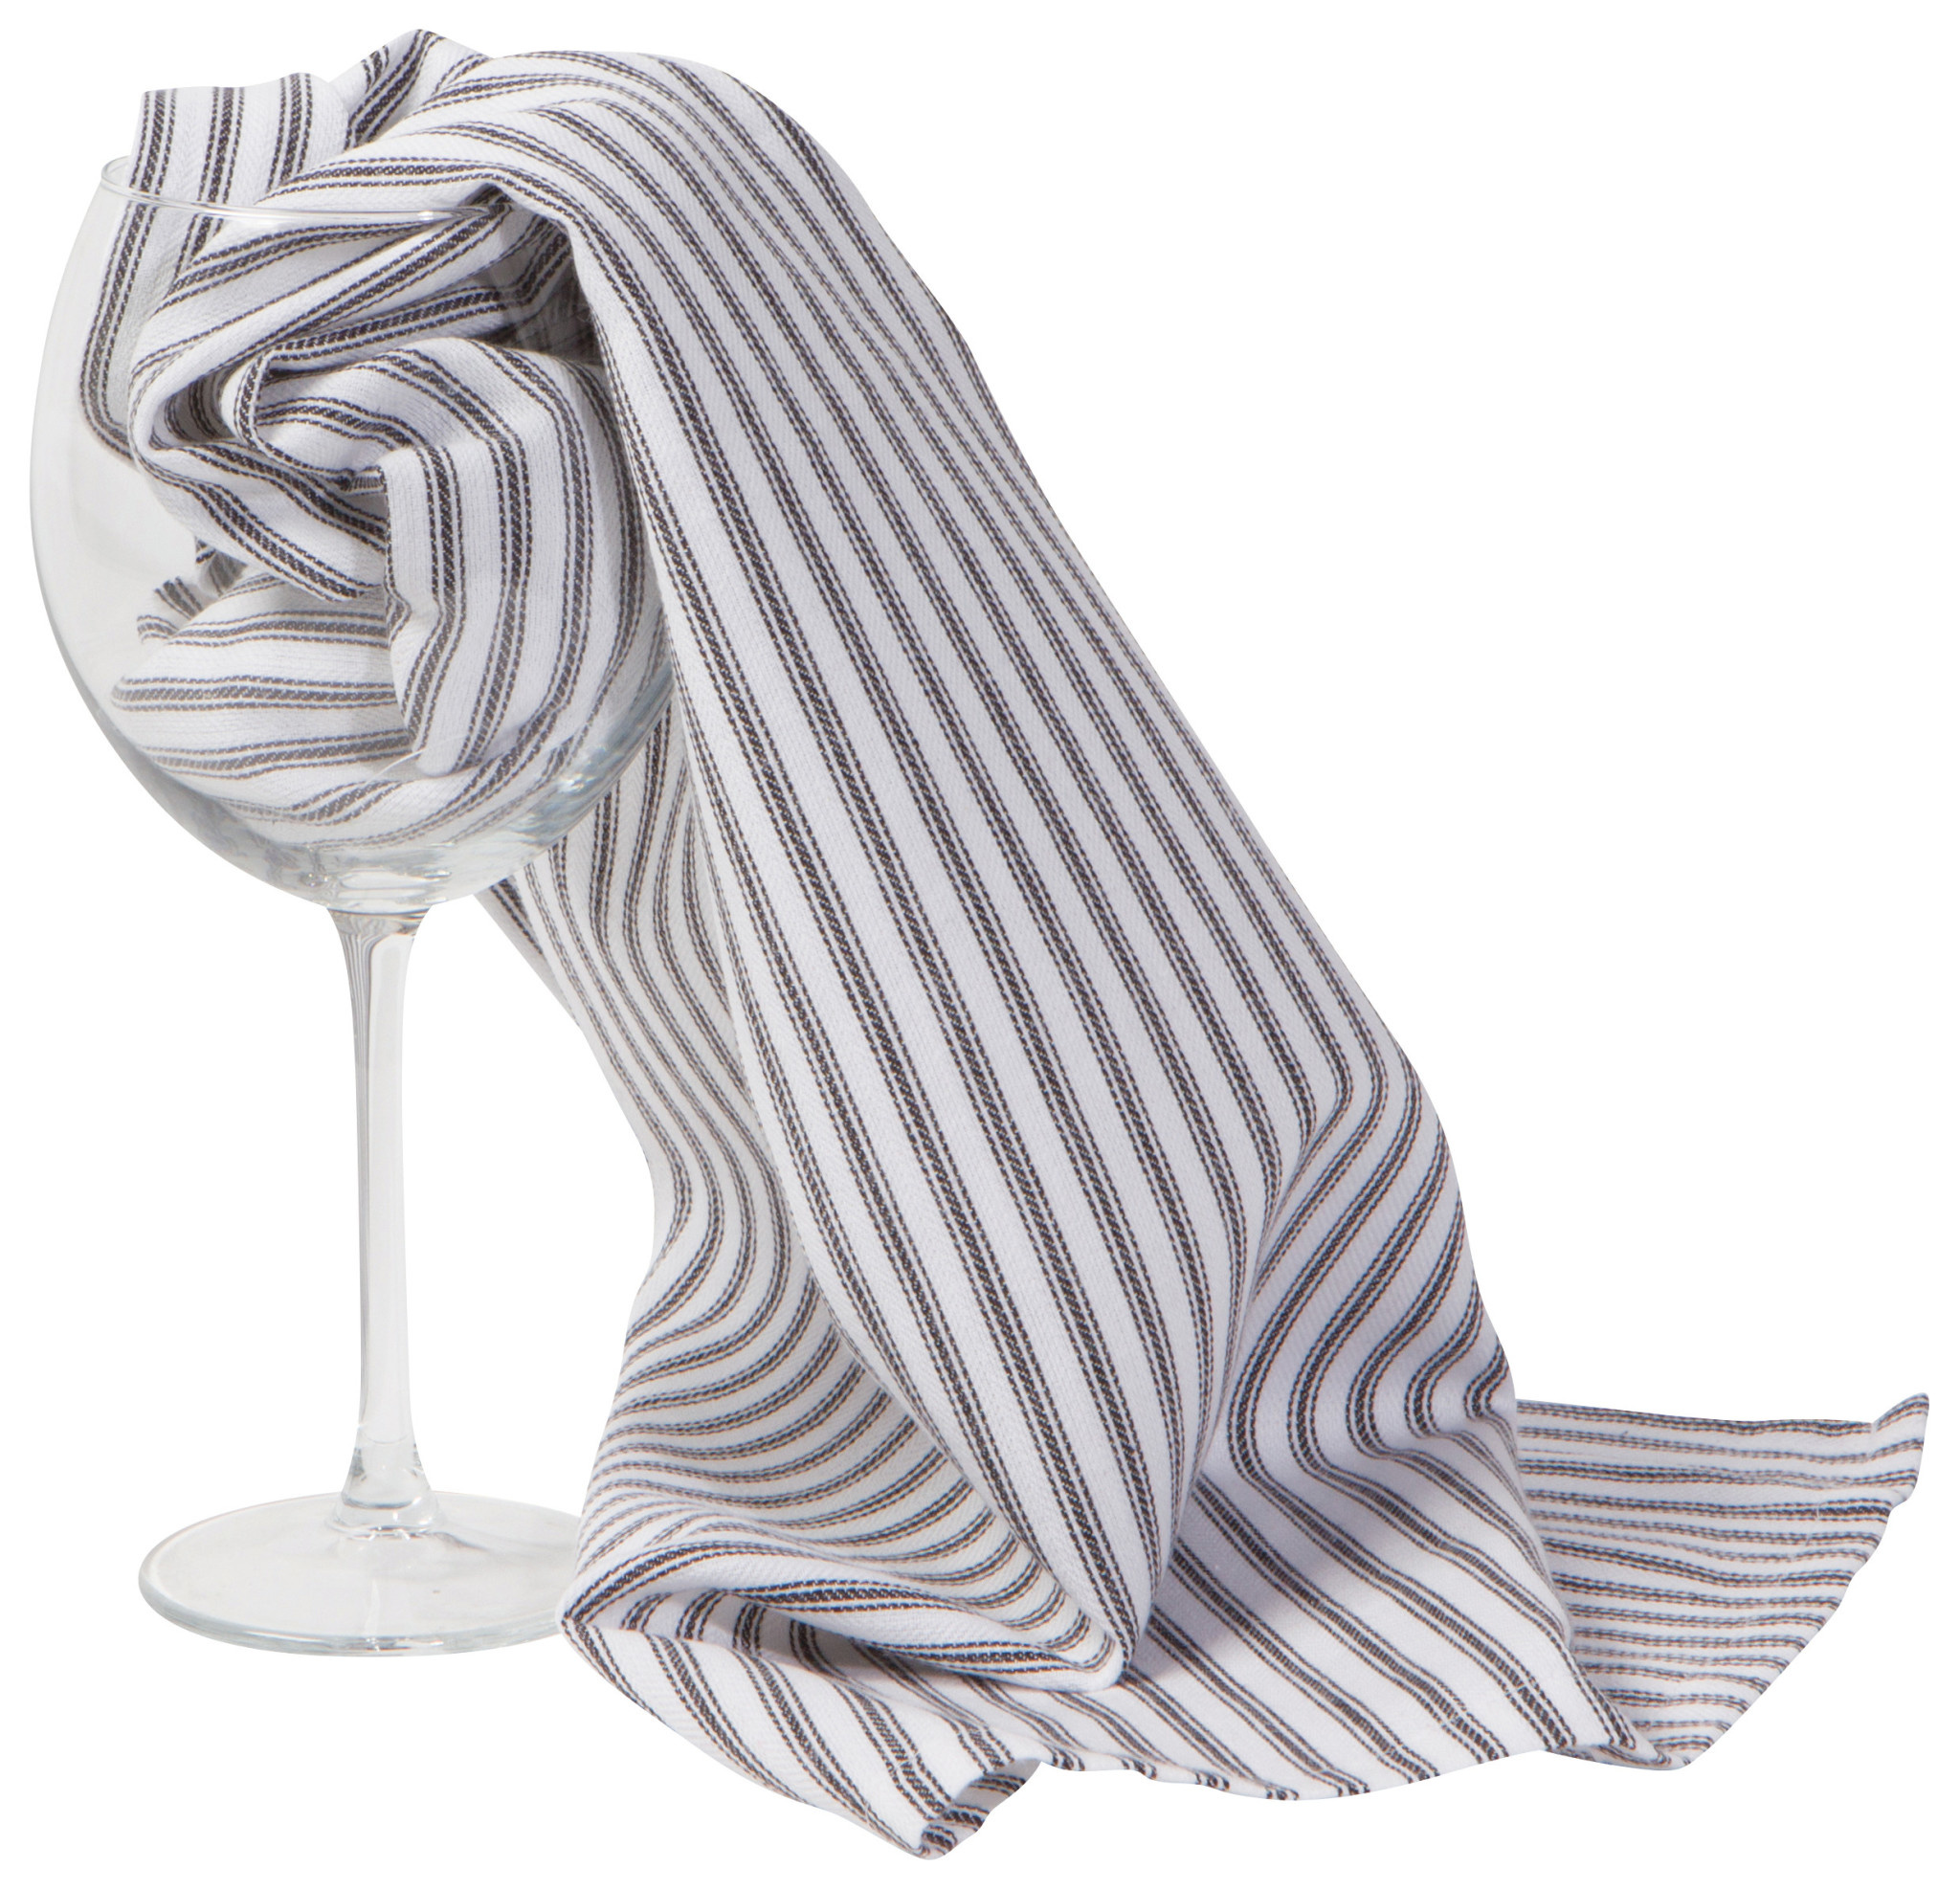 Danica Danica - Glass Towels Set of 2